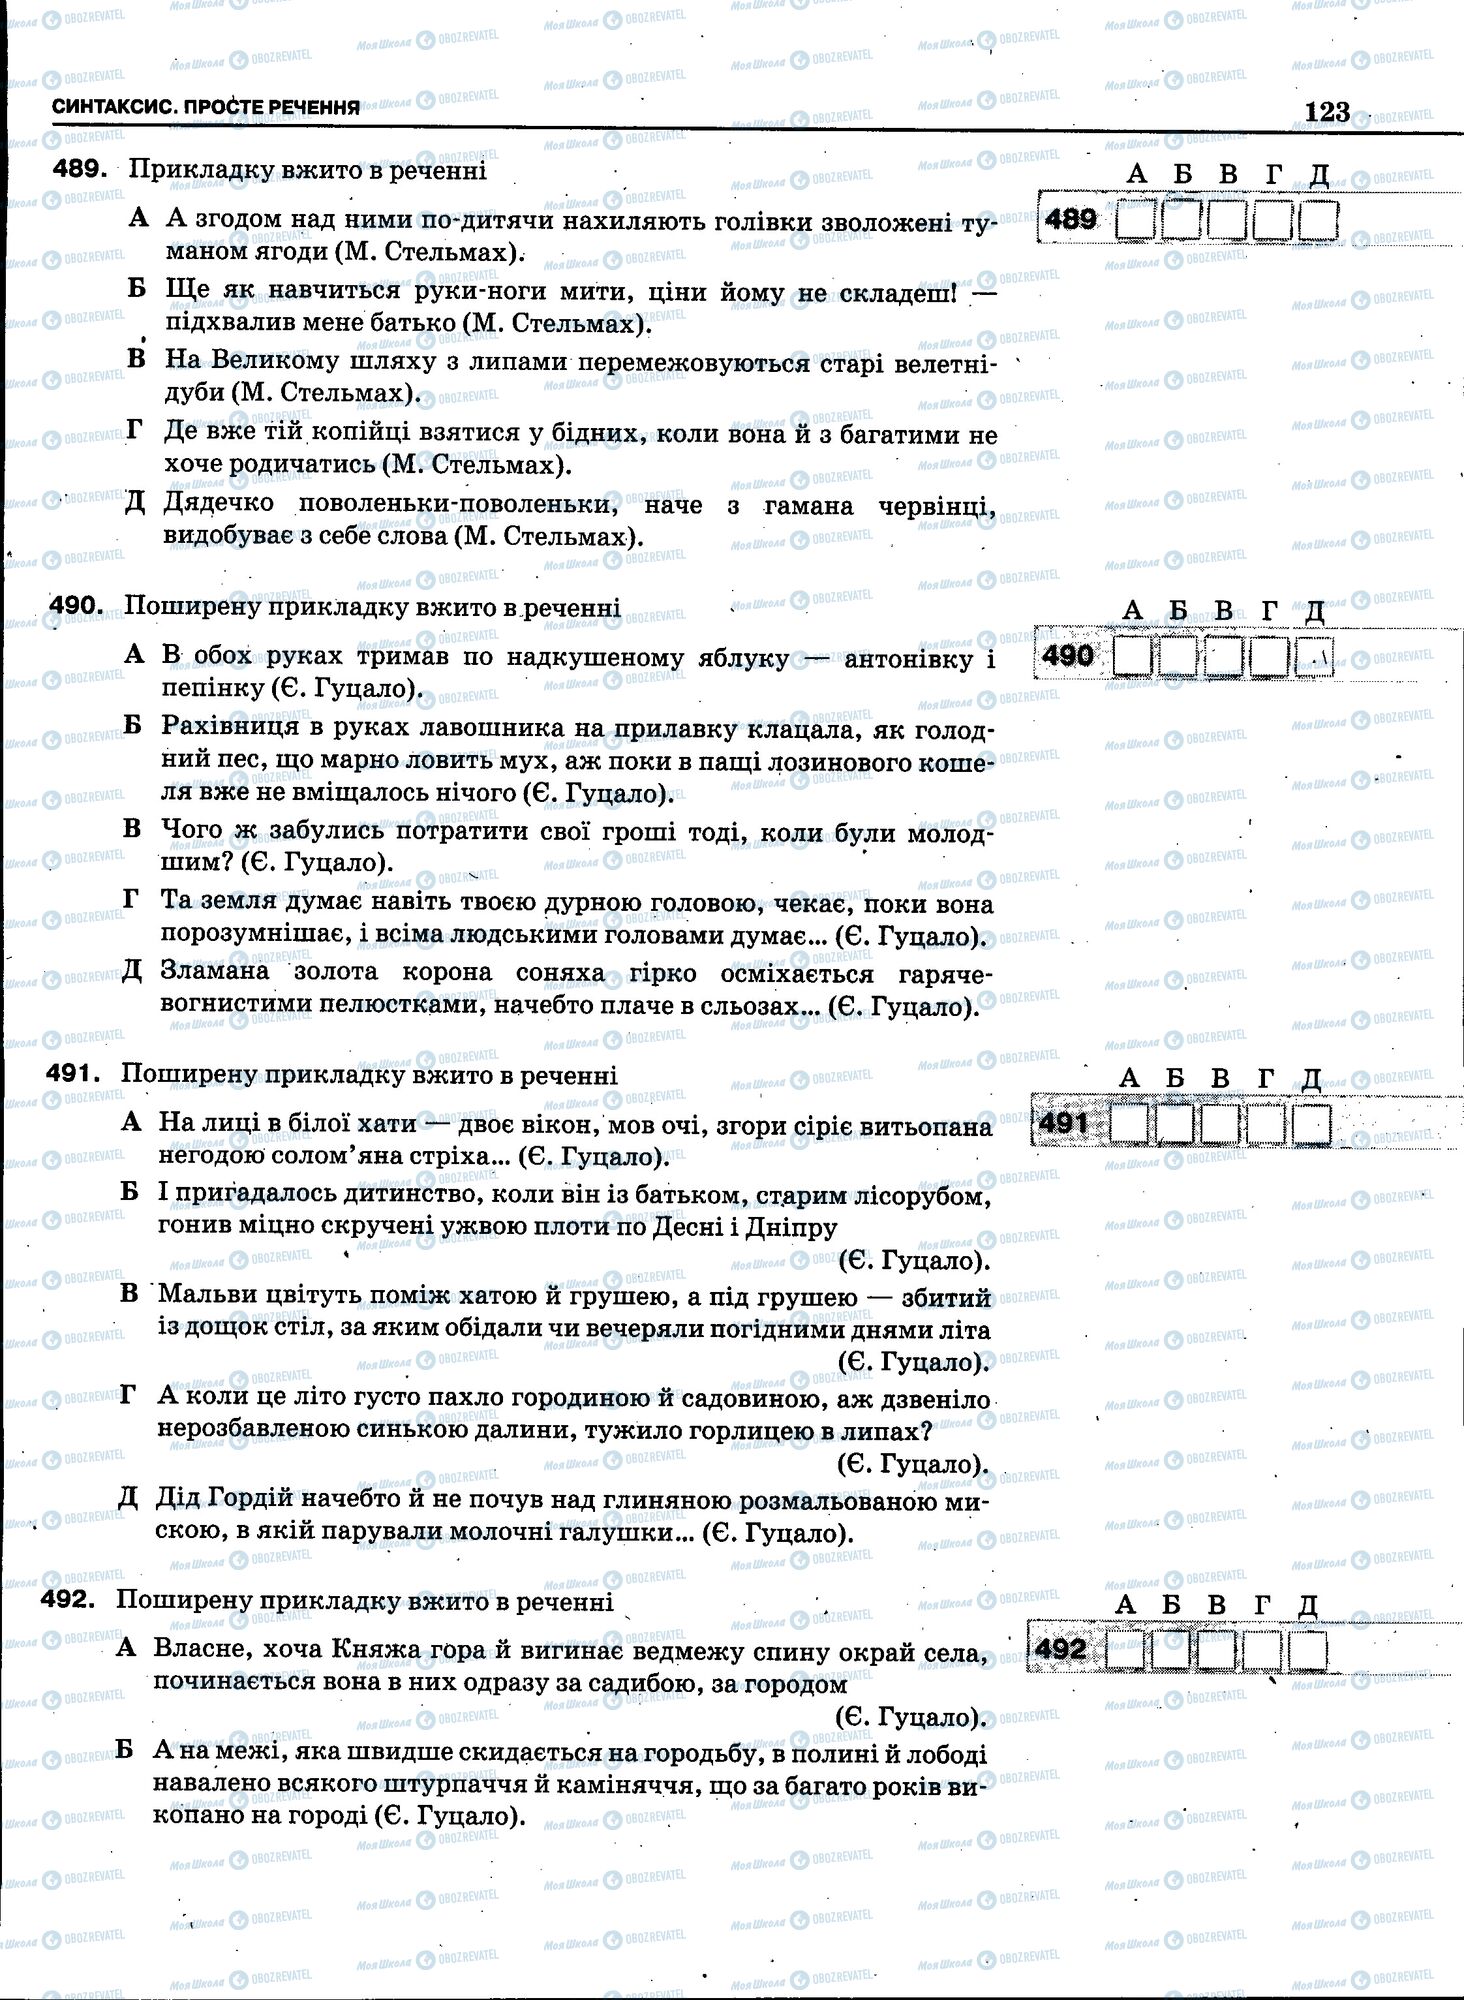 ЗНО Укр мова 11 класс страница 121